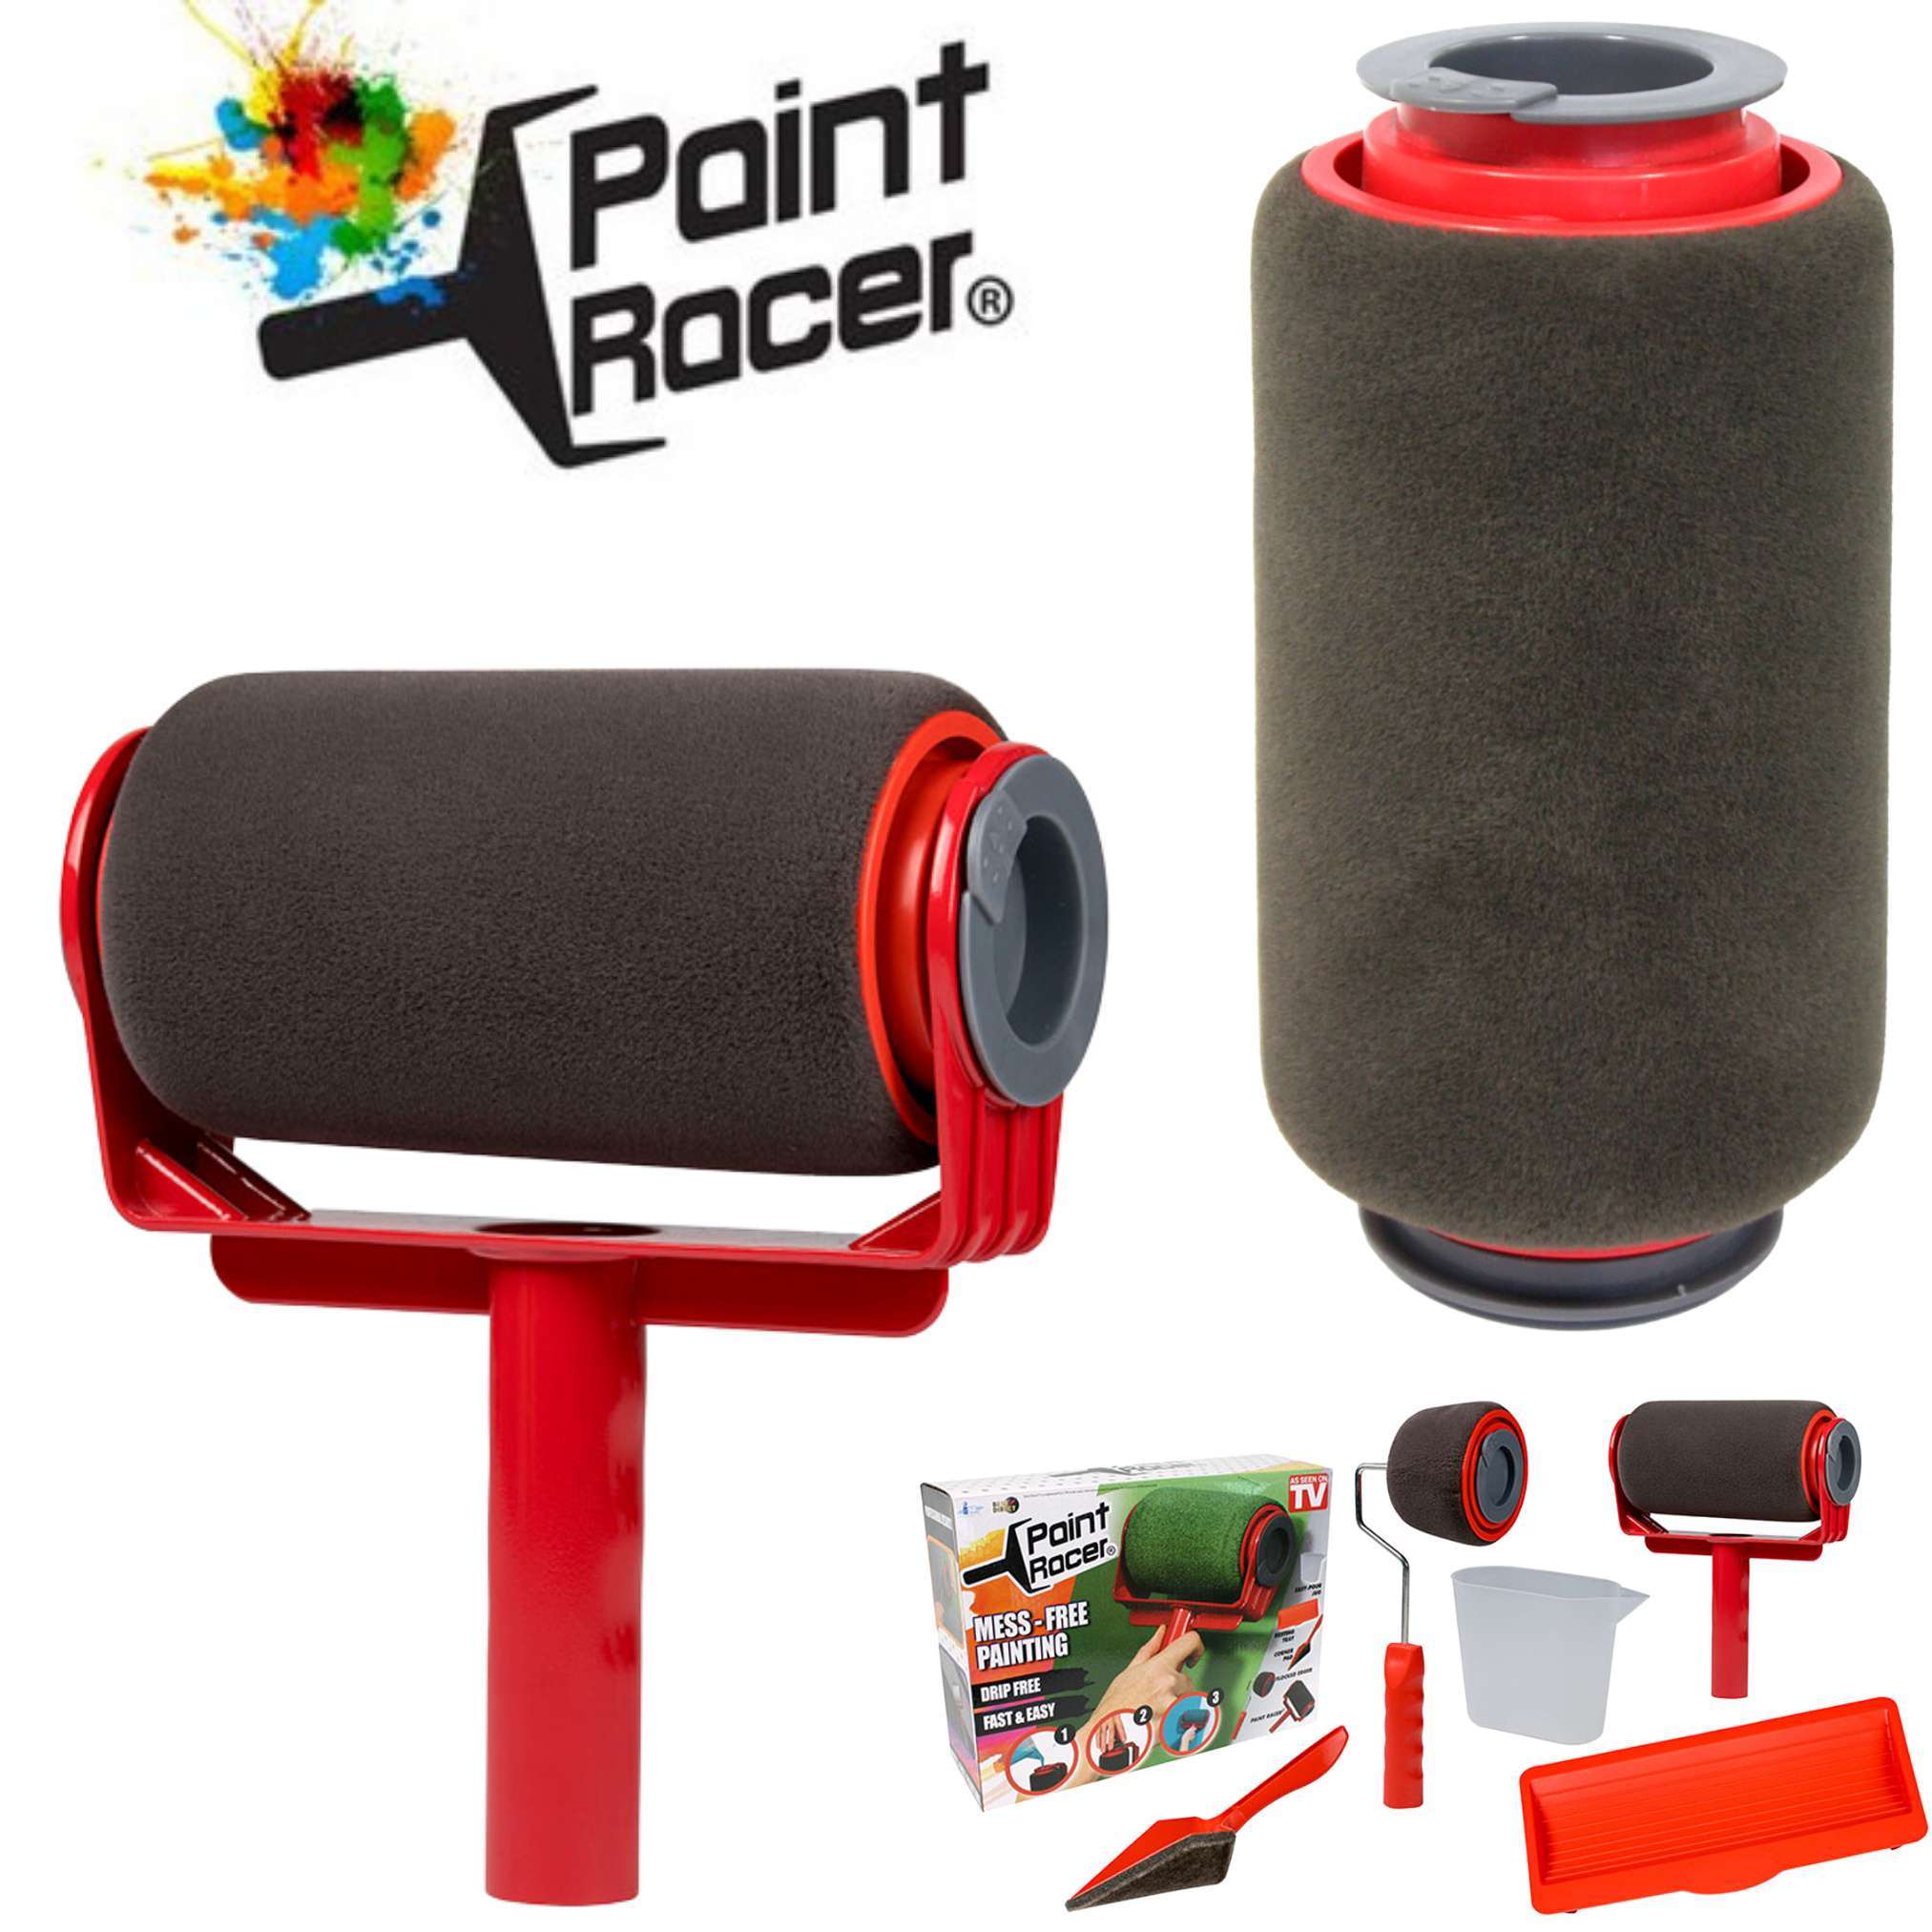 Paint Racer® befüllbarer inkl. Farbroller